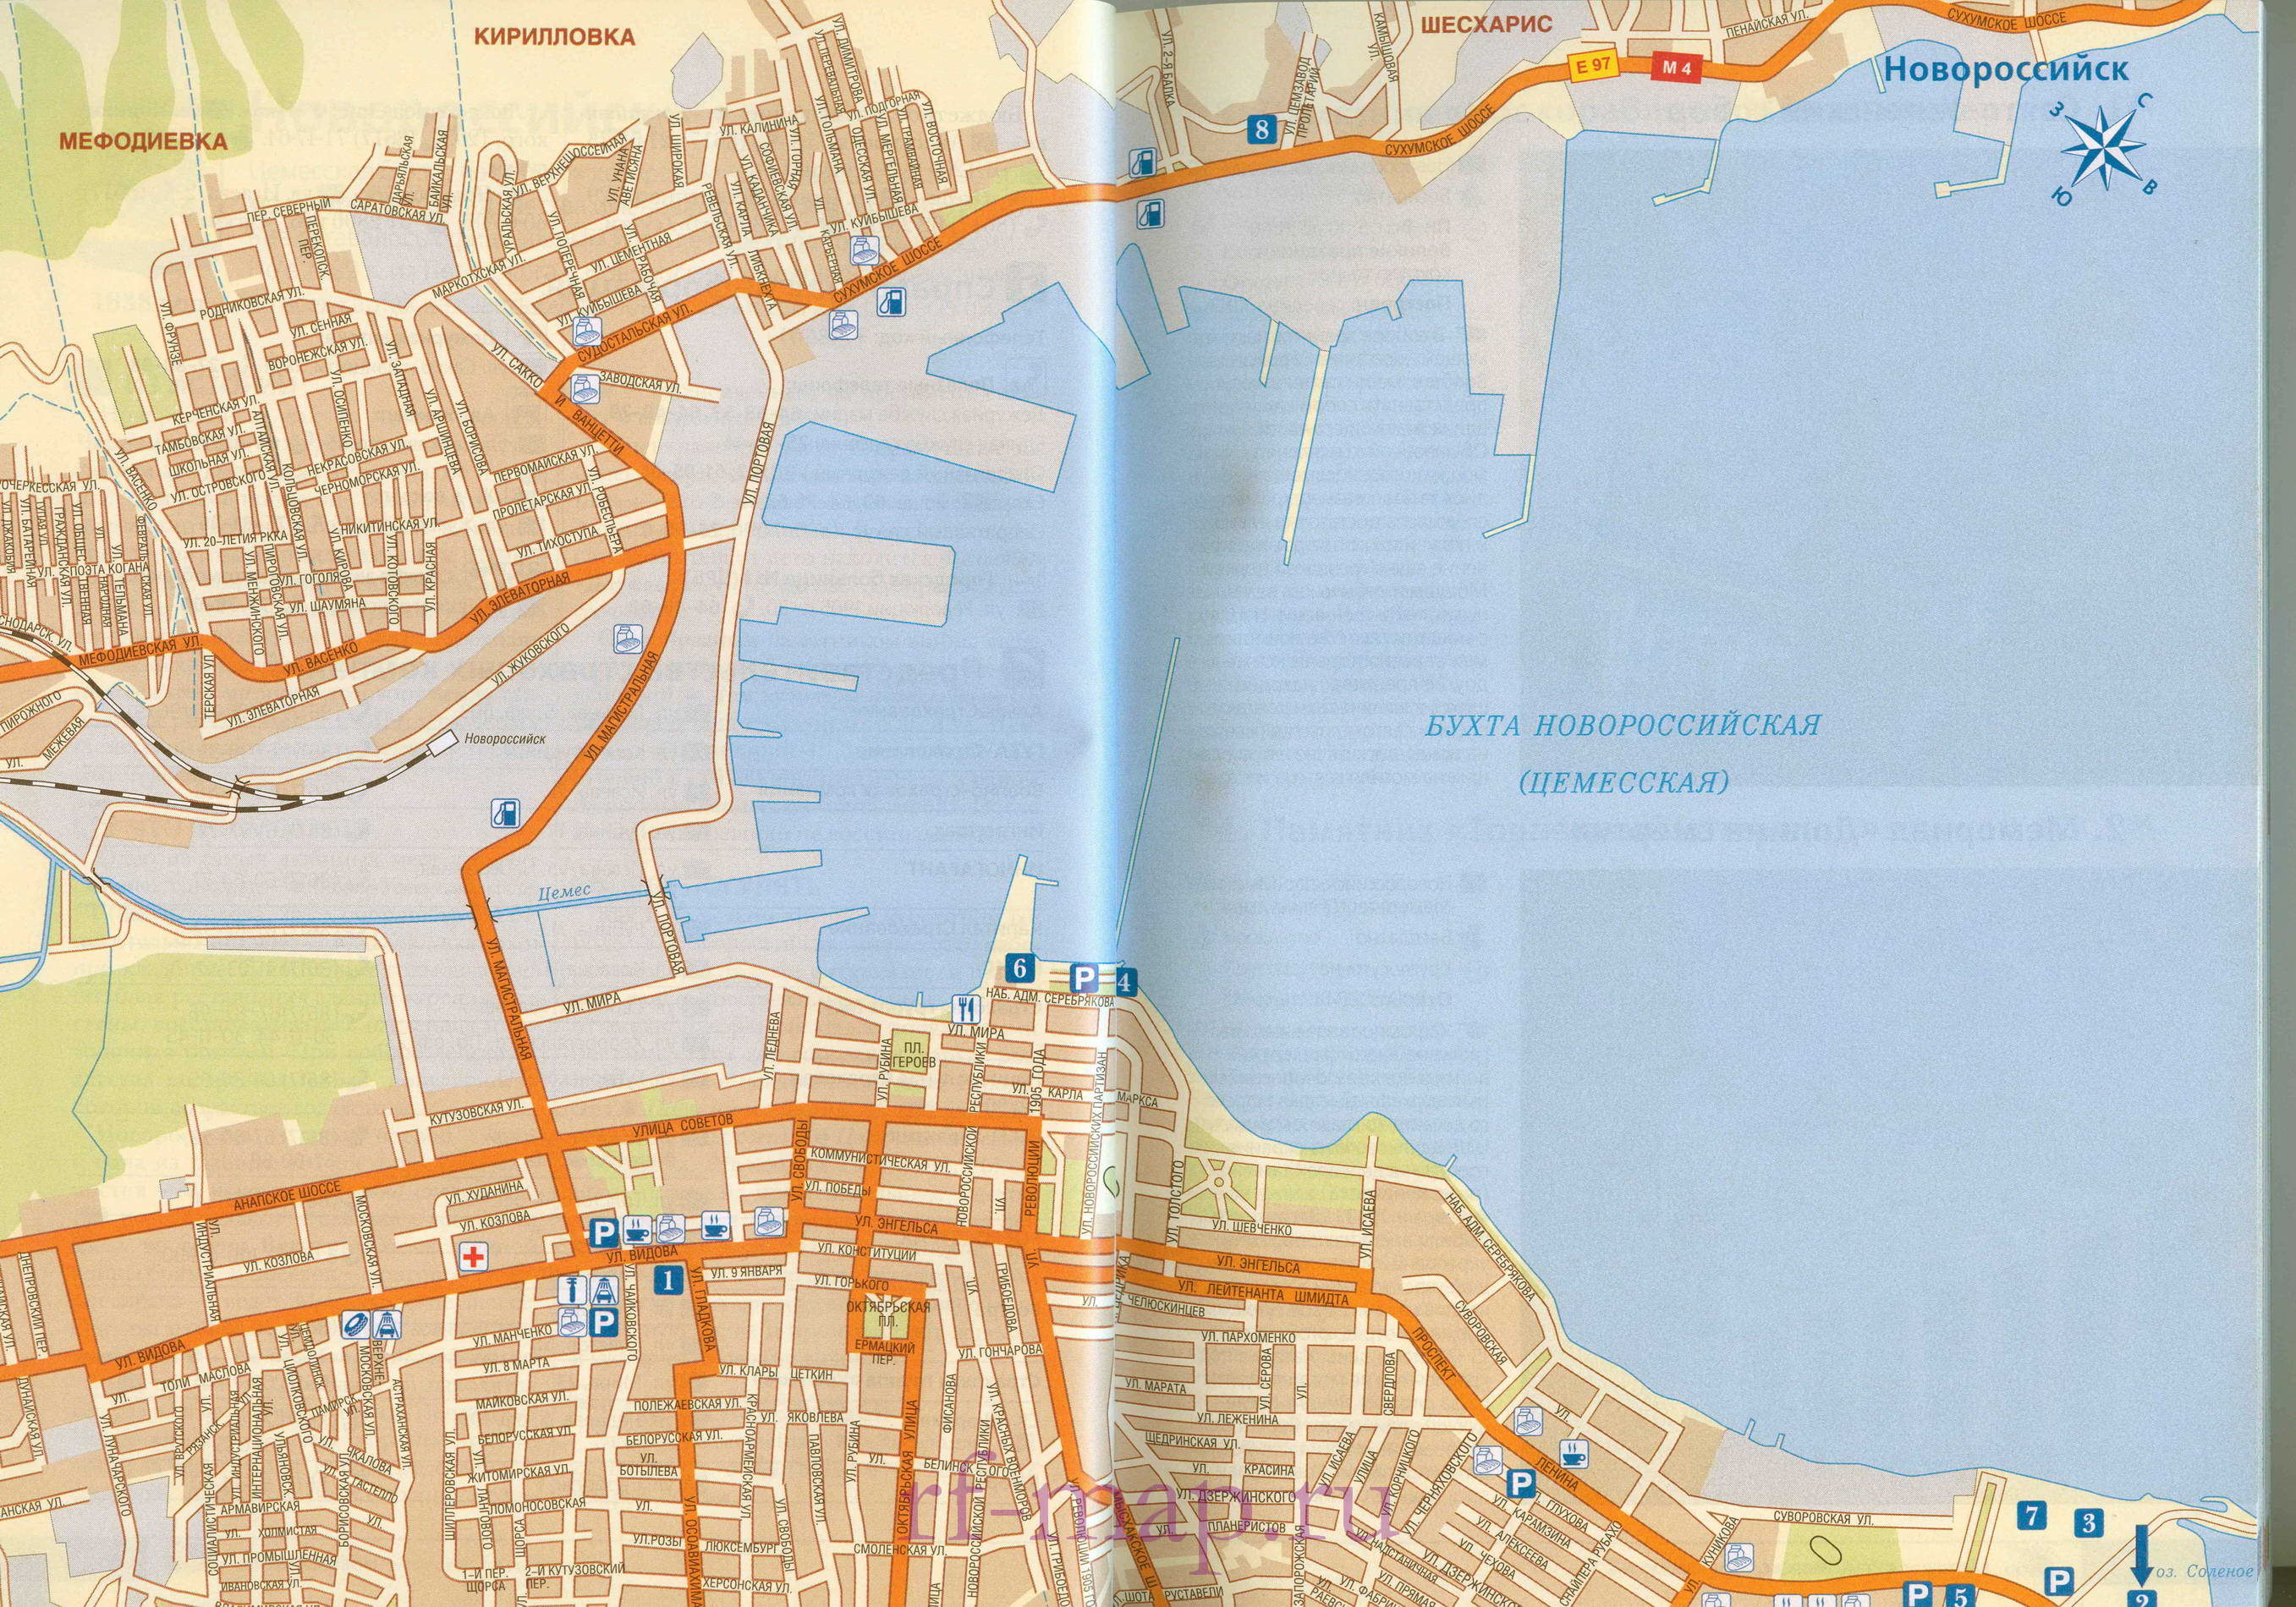 Карта улиц Новороссийска. Крупномасштабная карта города Новороссийск с названиями улиц и схемой проезда транспорта, A0 - 